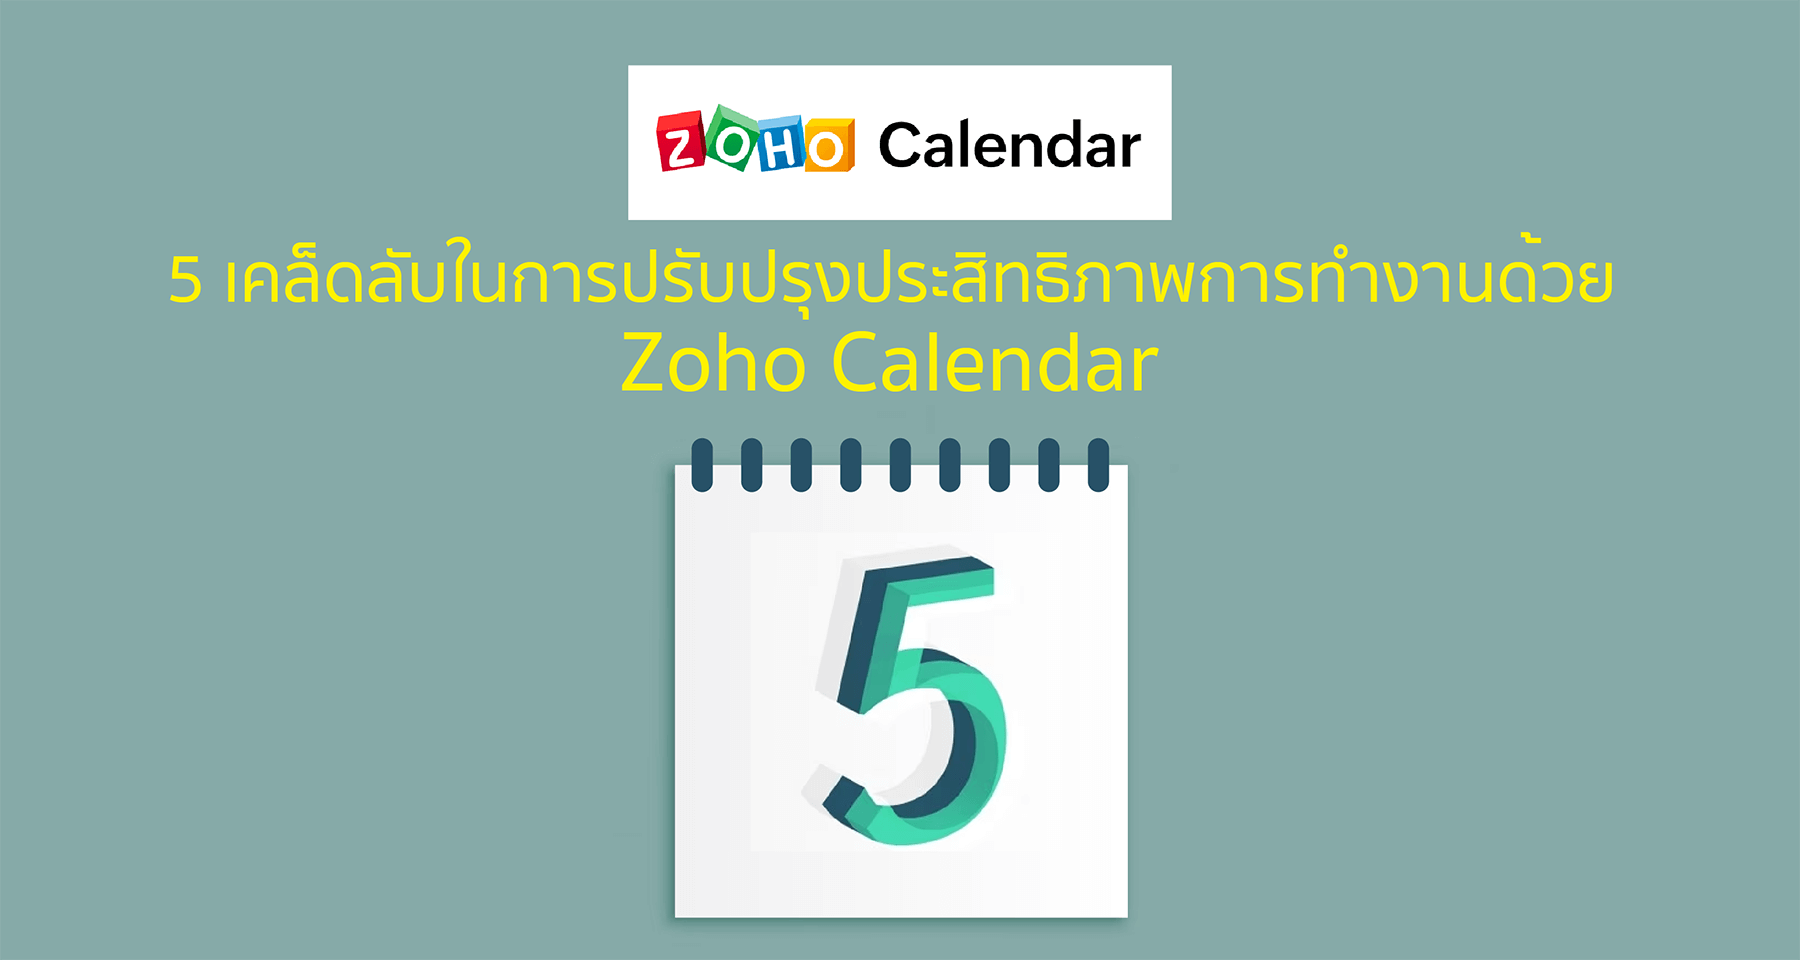 5 เคล็ดลับในการปรับปรุงประสิทธิภาพการทำงานด้วย Zoho Calendar